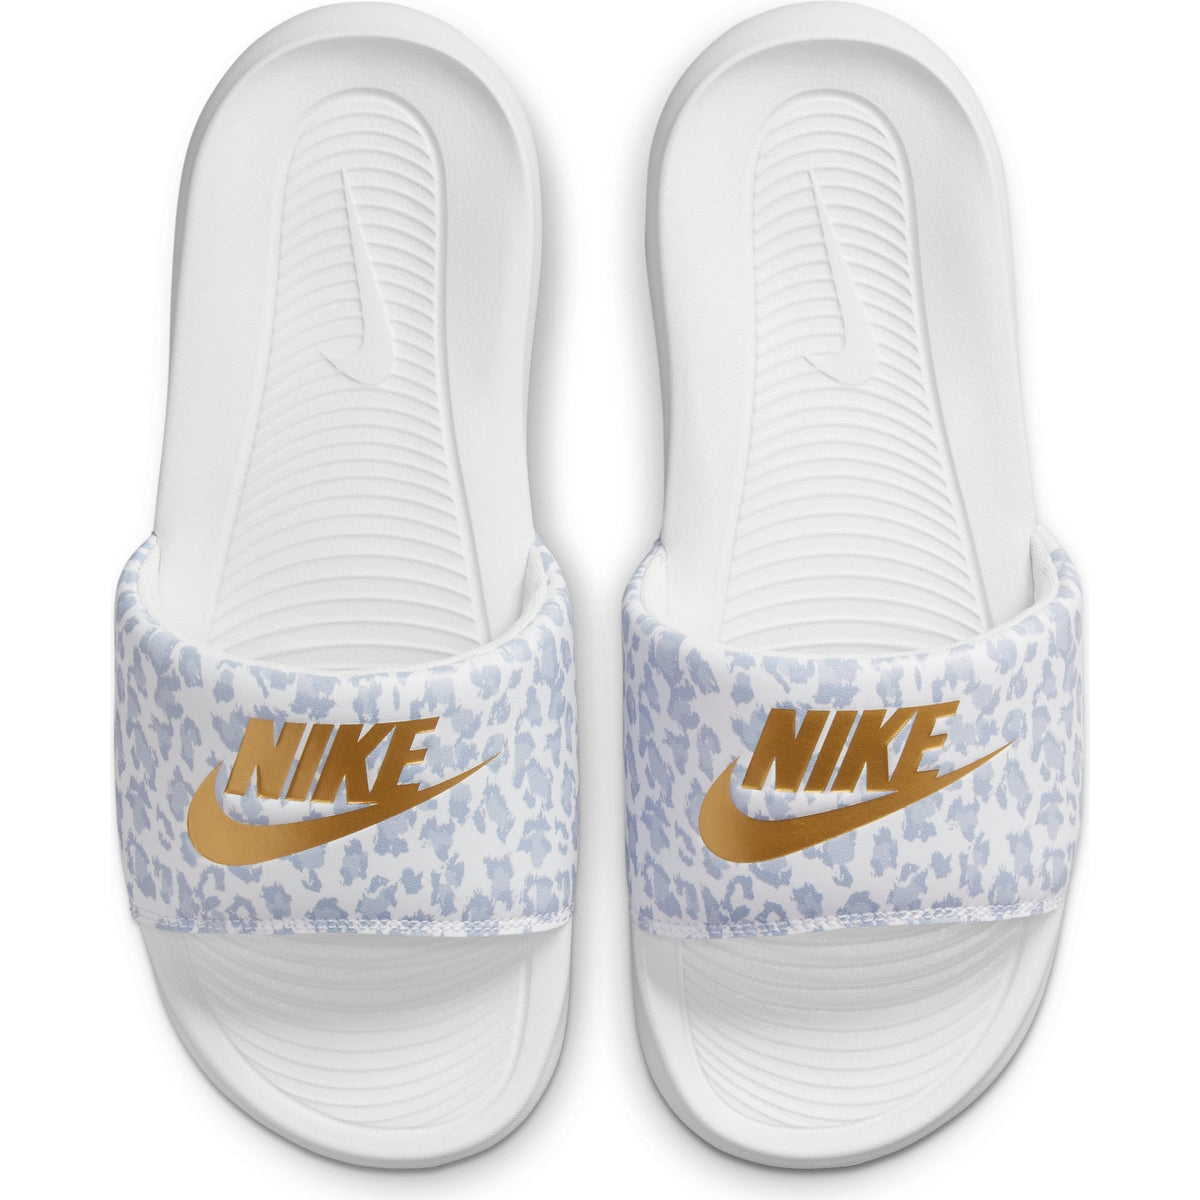 Chancletas Nike Victori One de Mujer color Blanco Estampado